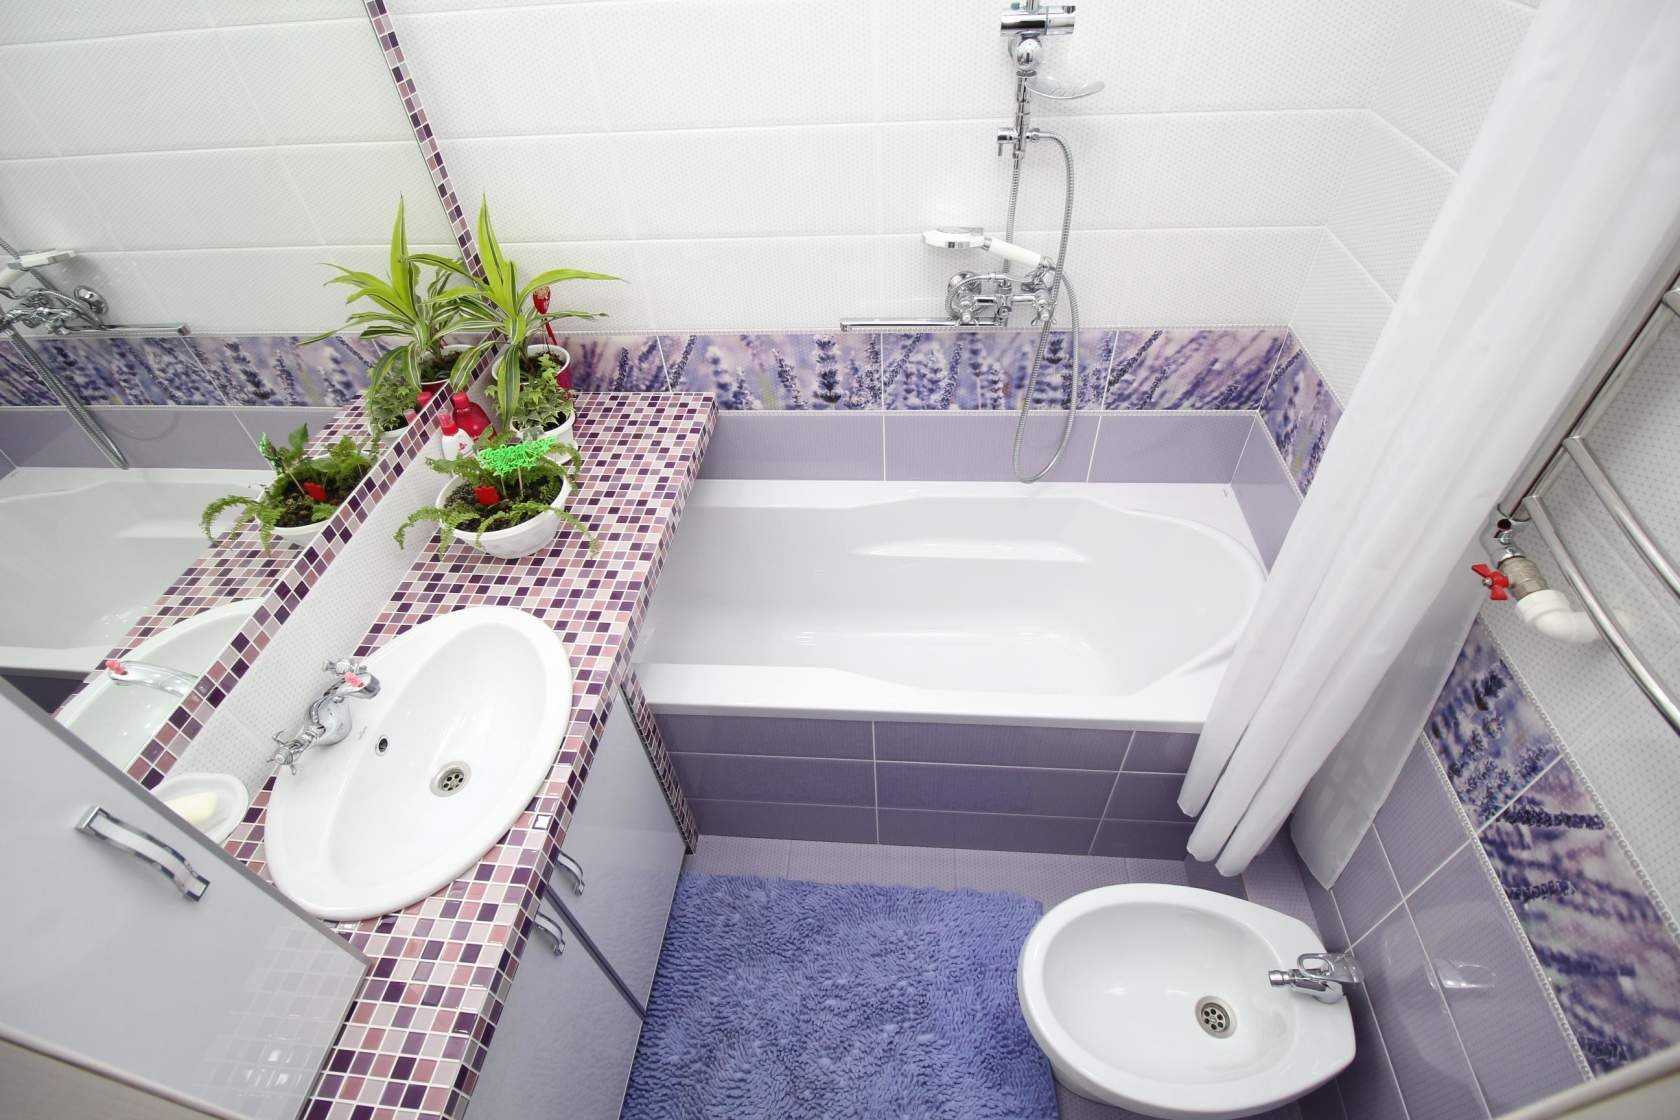 Какой цвет плитки выбрать для маленькой ванной комнаты фото дизайн